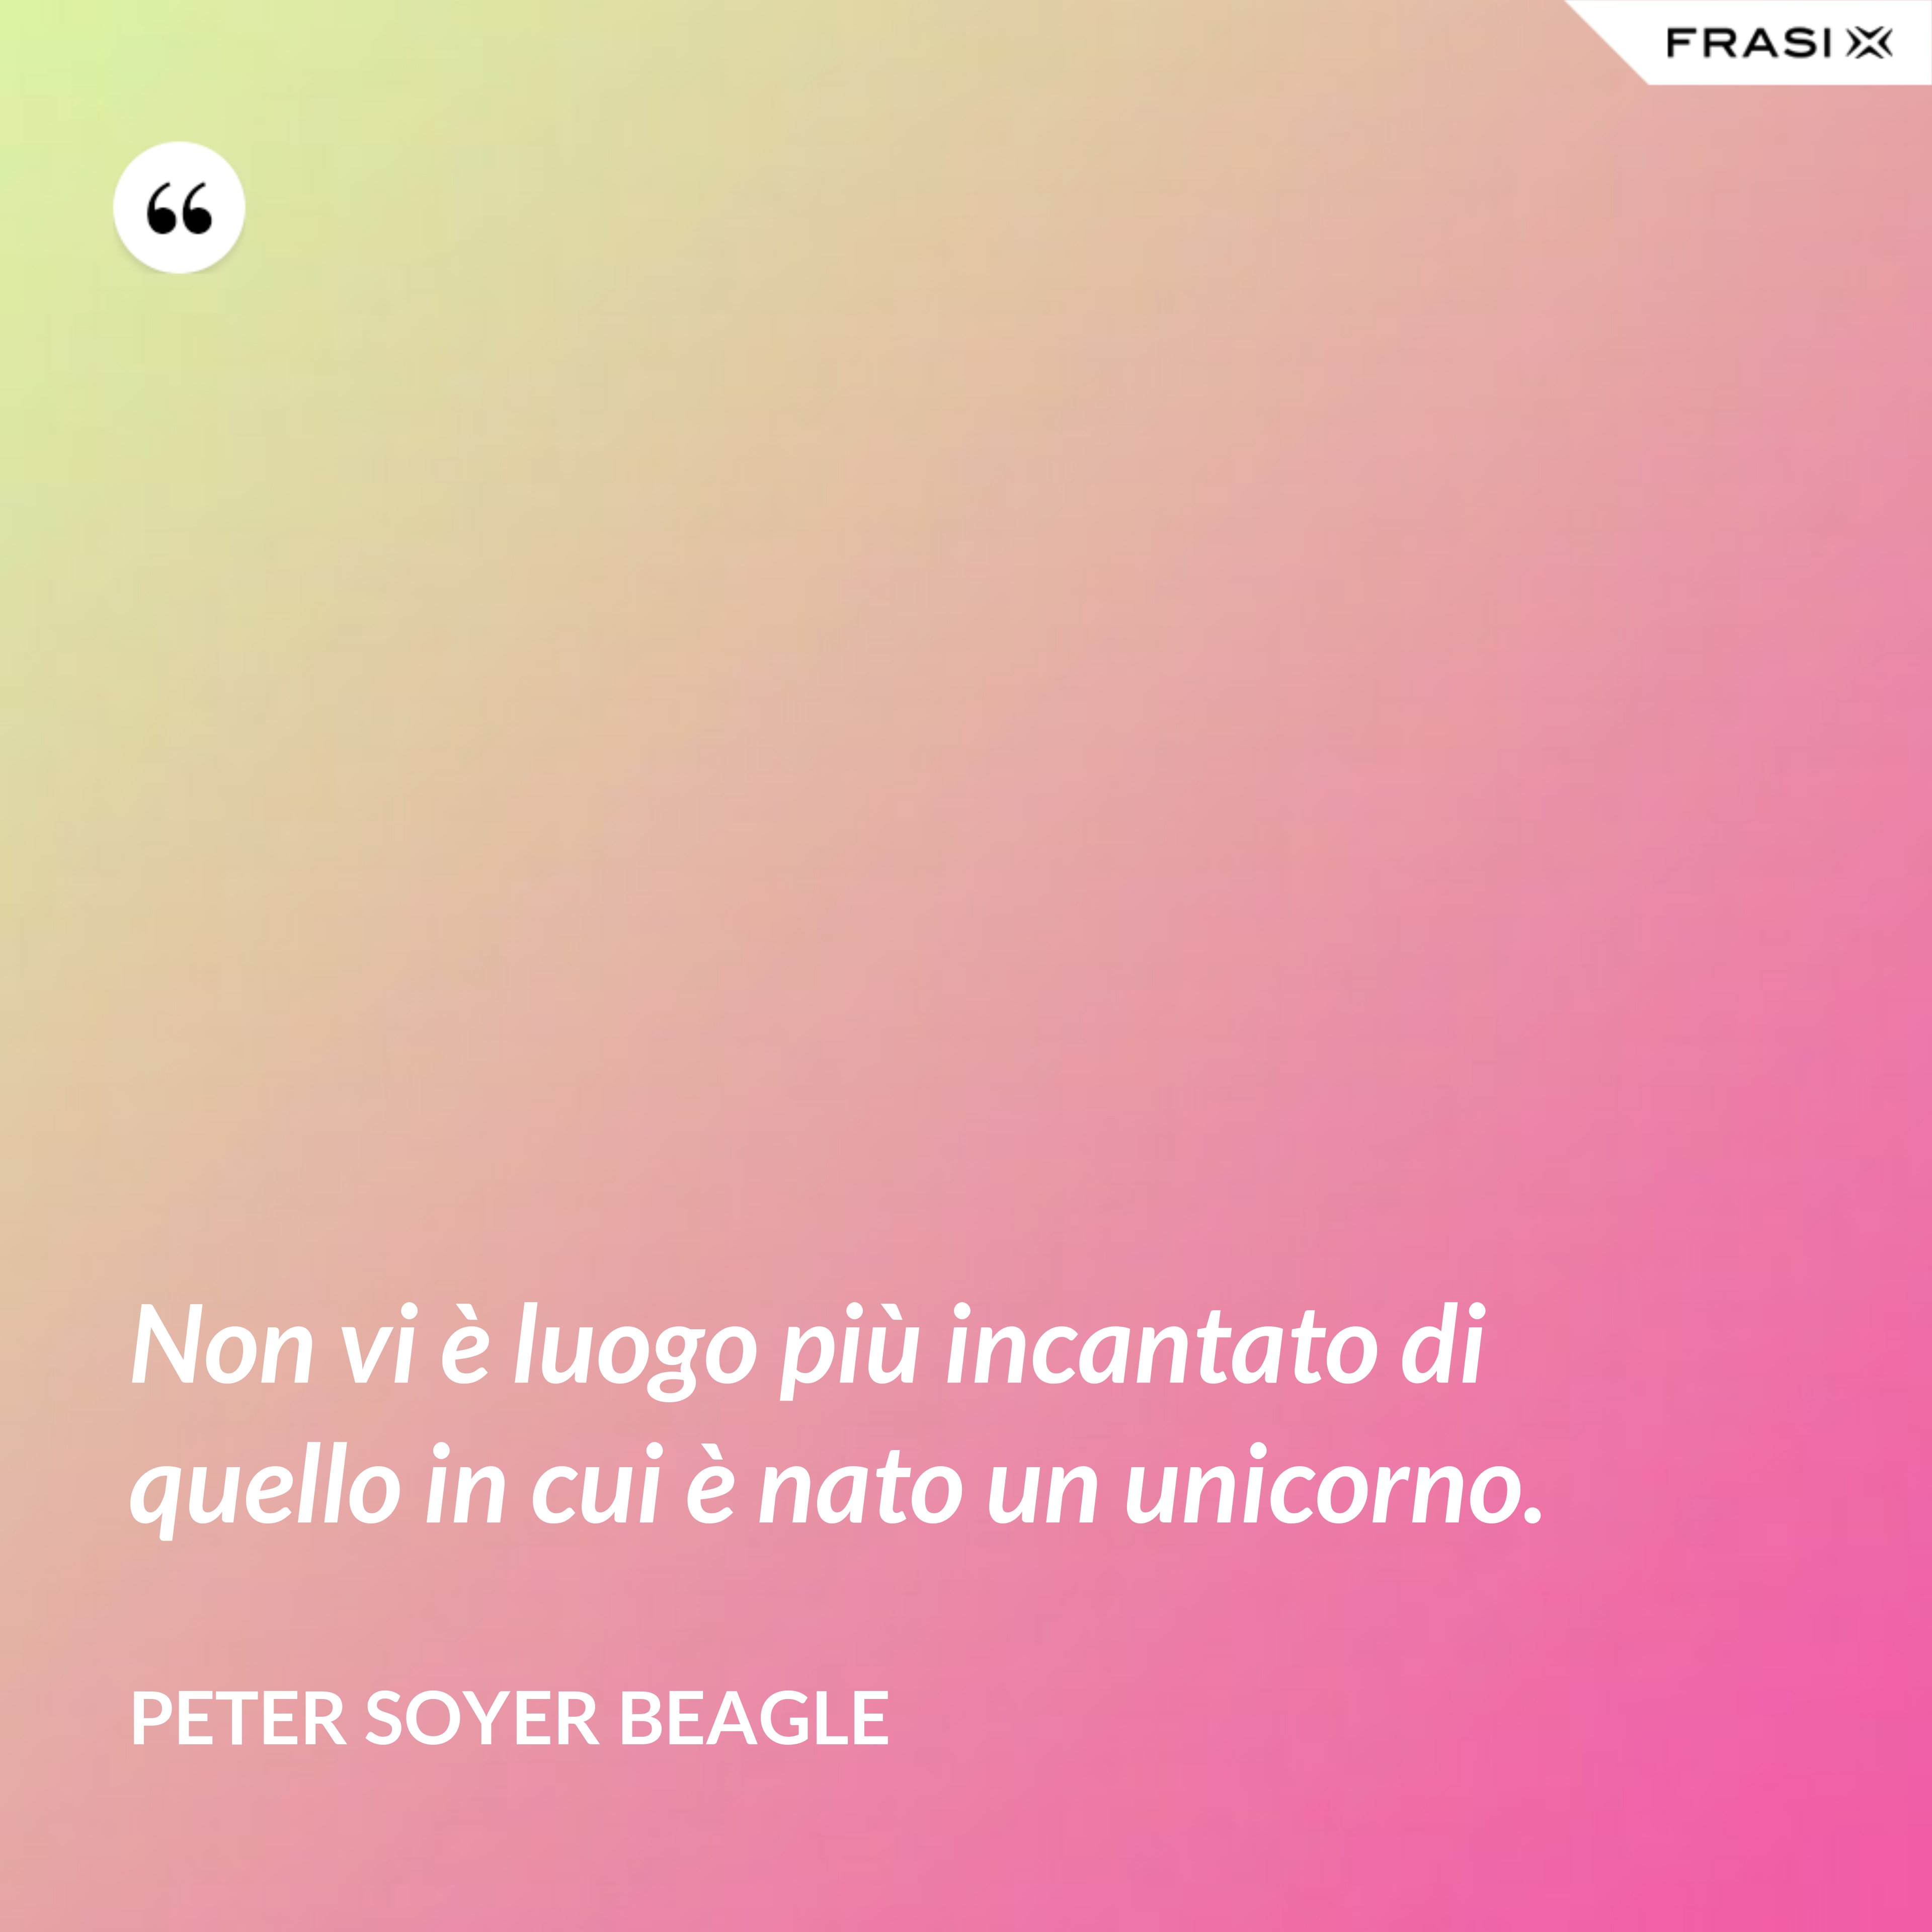 Non vi è luogo più incantato di quello in cui è nato un unicorno. - Peter Soyer Beagle